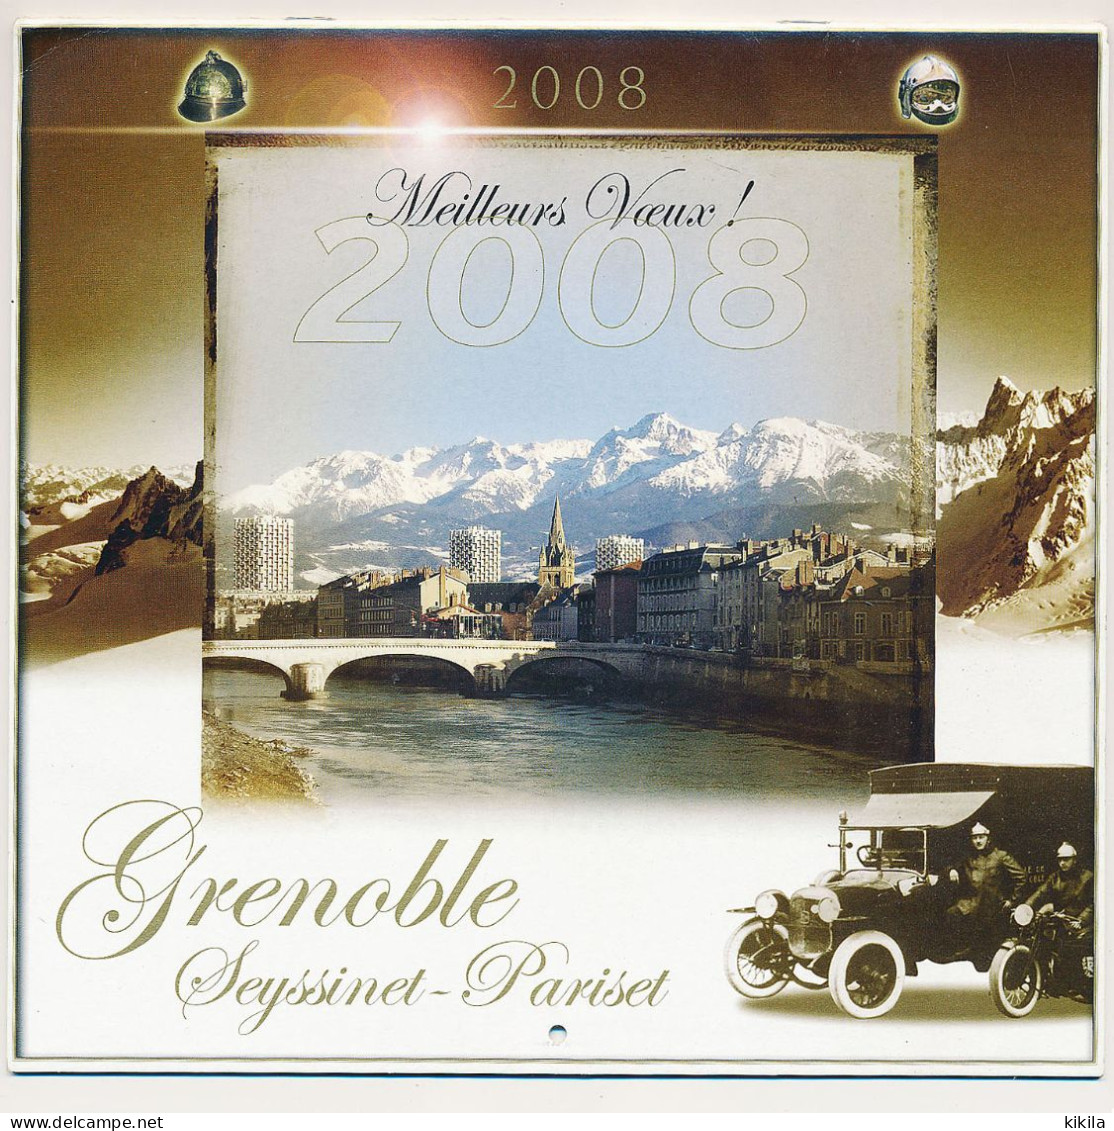 Calendrier Grand Format 2008 Des SAPEURS POMPIERS De Grenoble Seyssinet-Pariset Isère - Grand Format : 2001-...